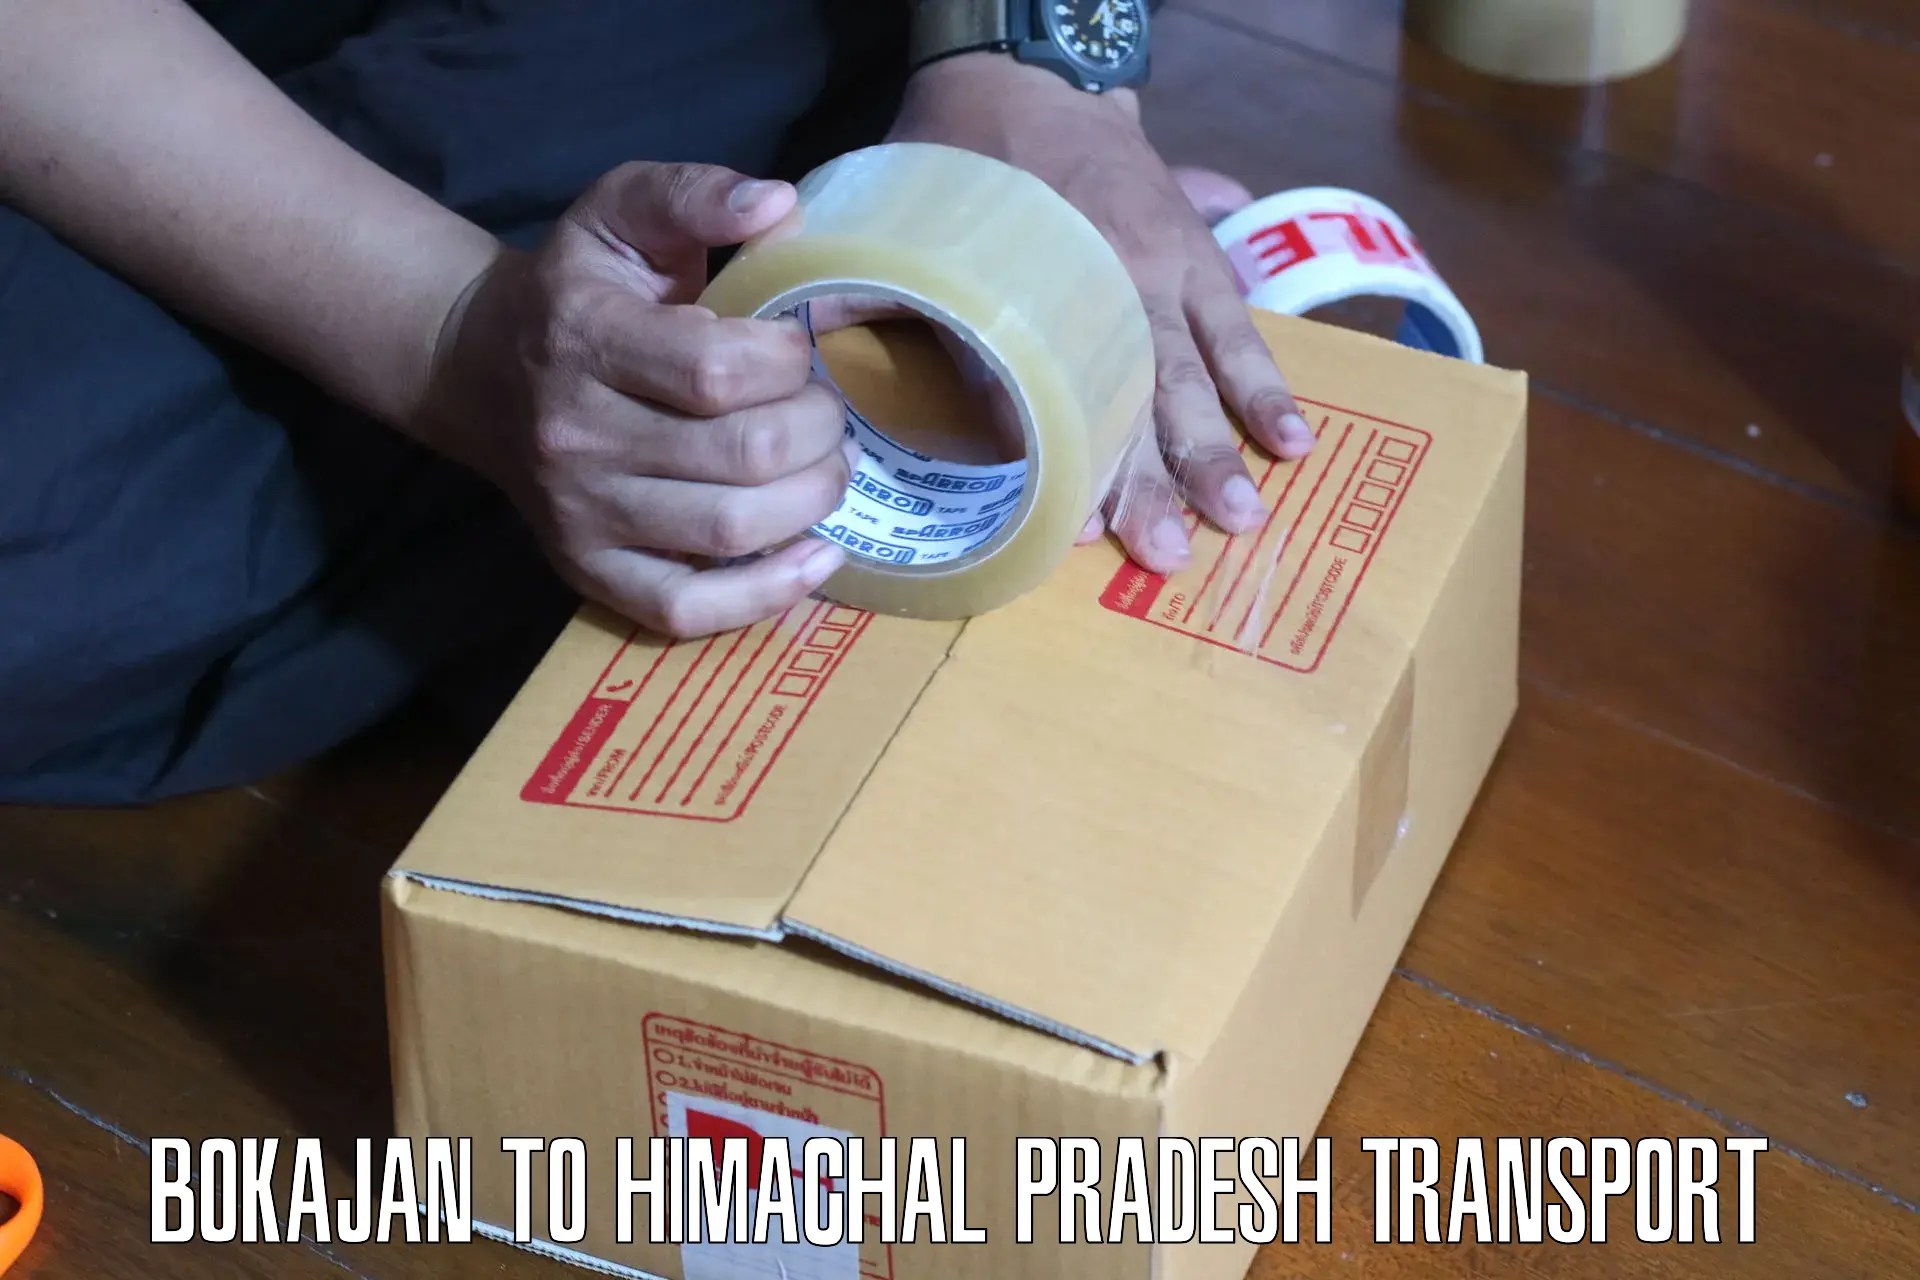 Part load transport service in India Bokajan to Himachal Pradesh